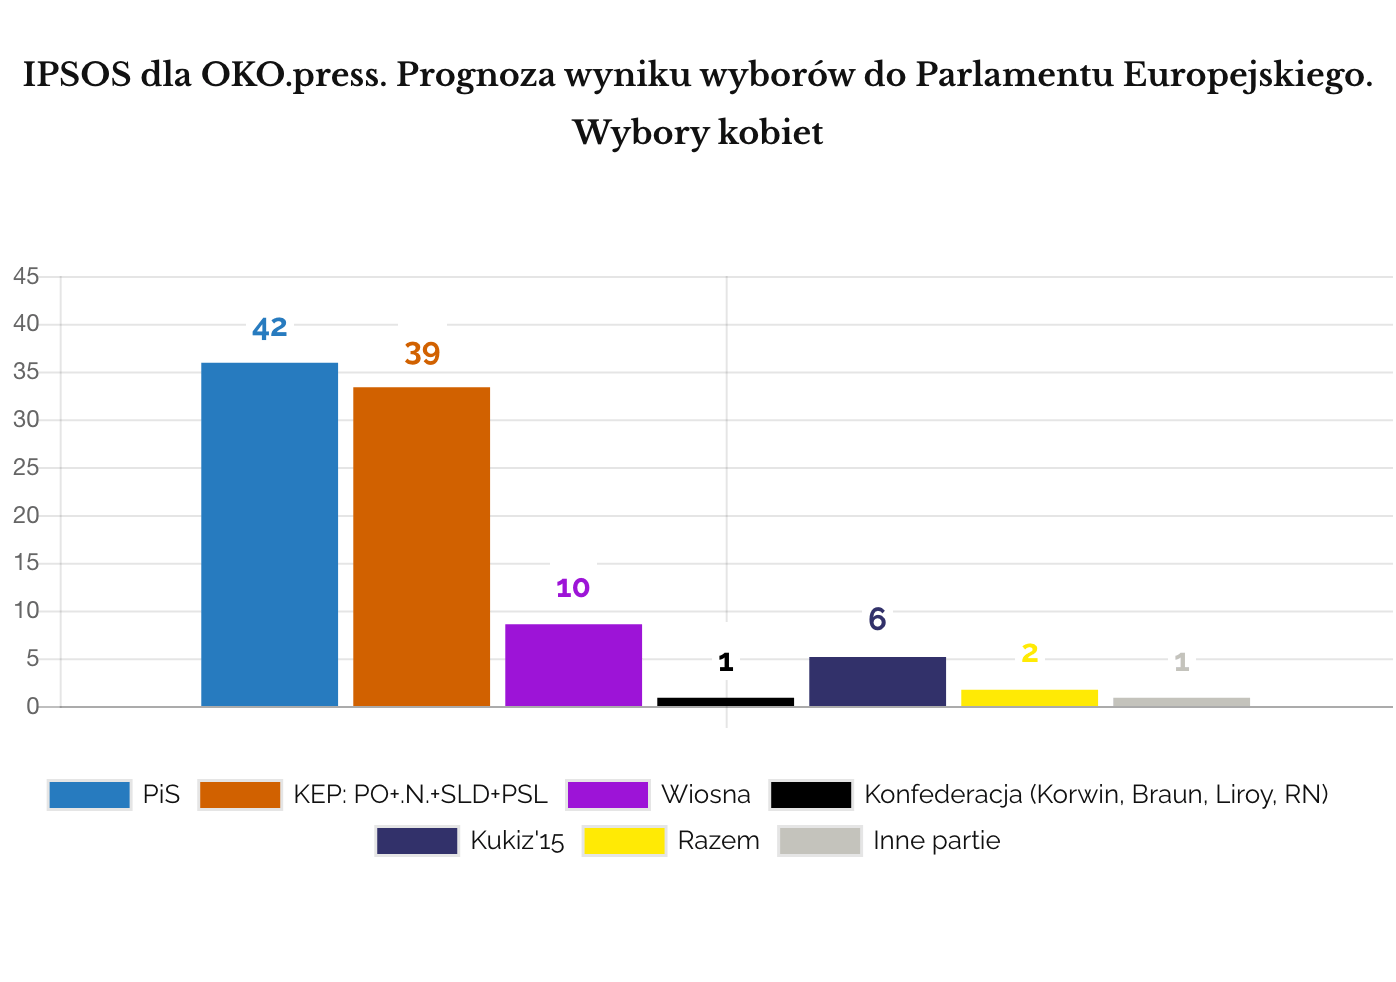 IPSOS 2019 maj poparcie dla partii i koalicji w eurowyborach